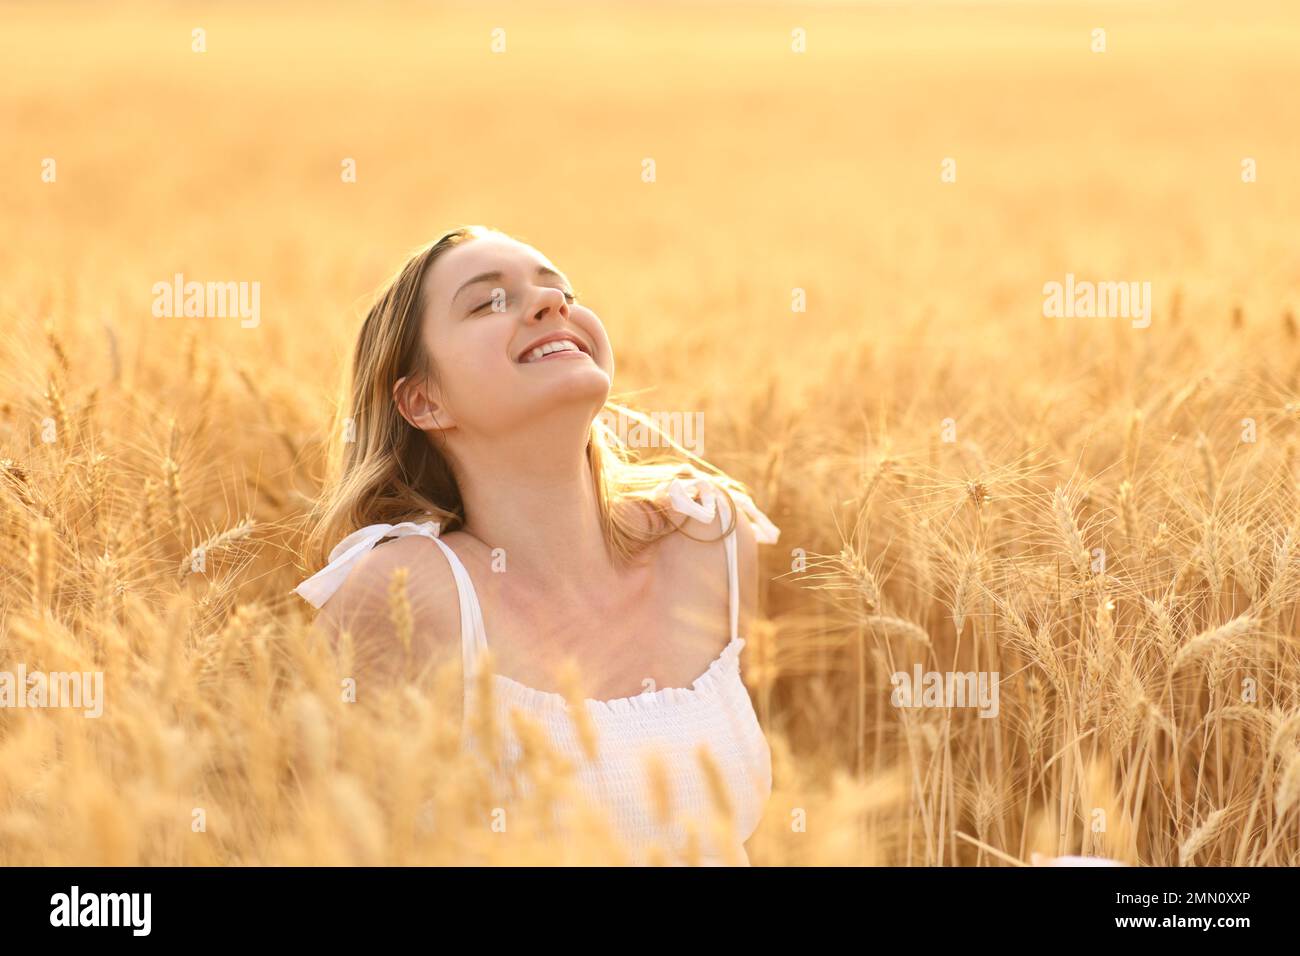 Une femme heureuse respirait de l'air frais dans un champ doré Banque D'Images